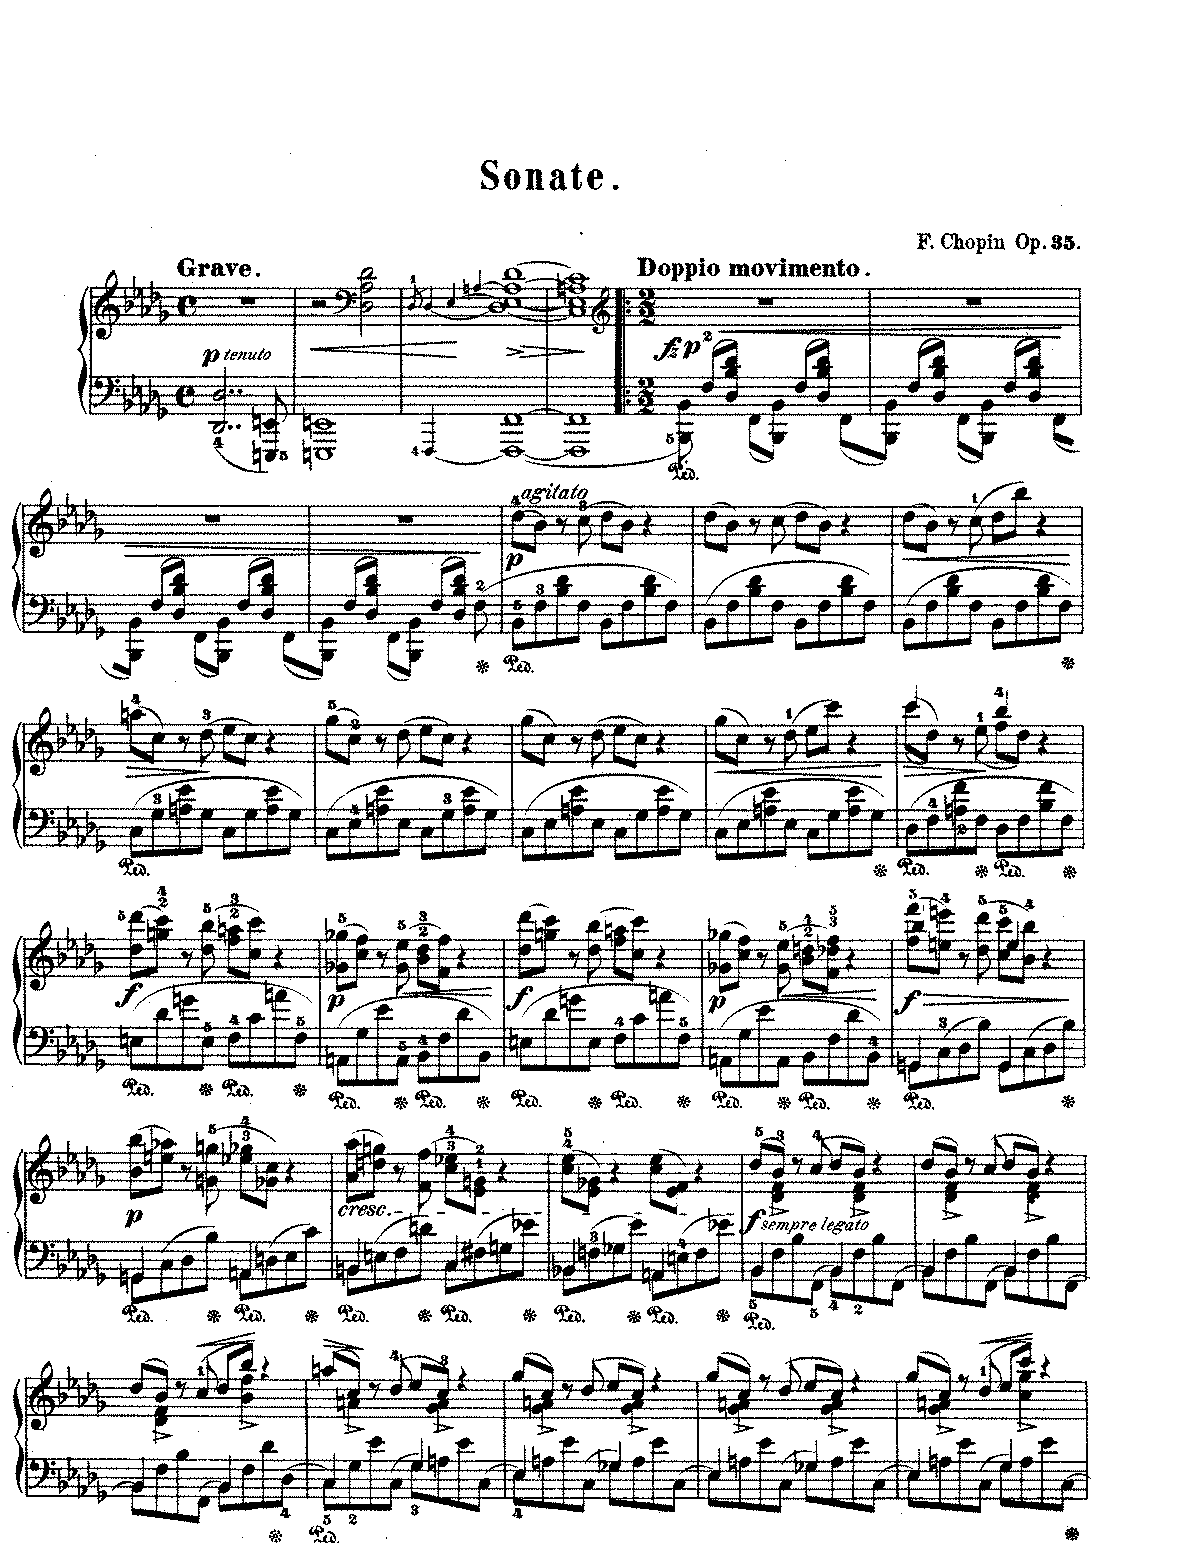 chopin sonata 3